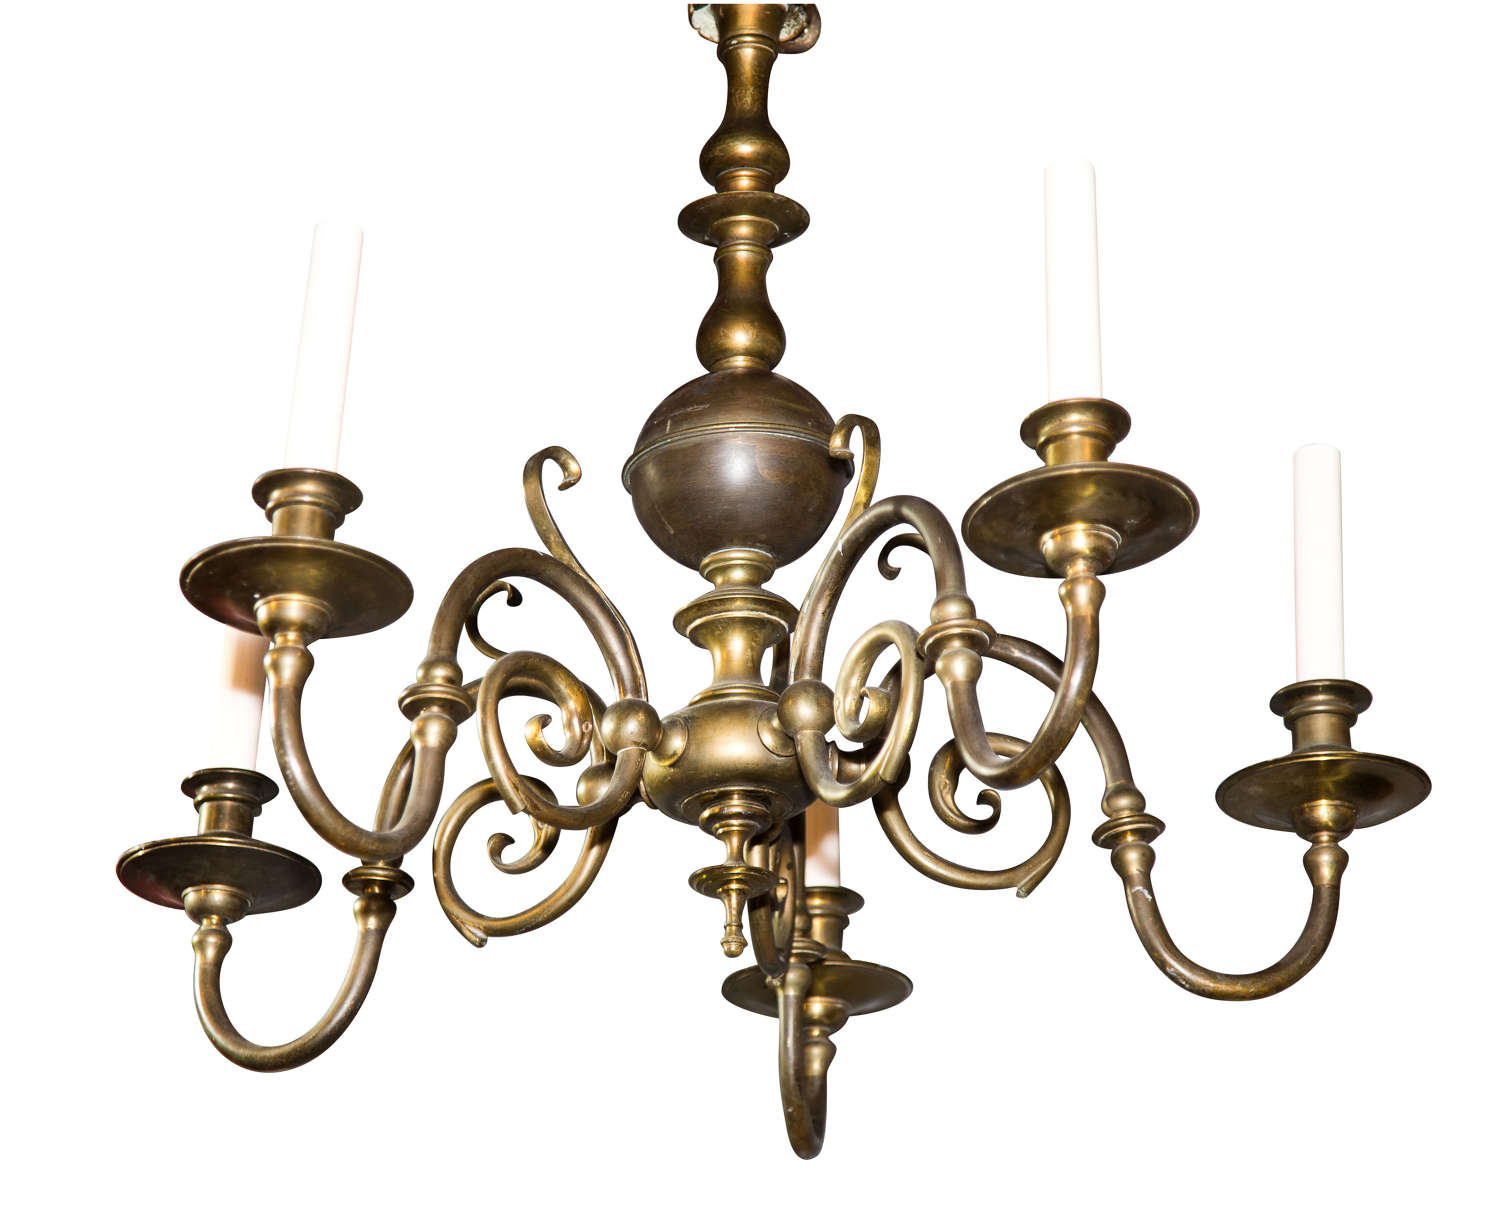 5 light Dutch style chandelier c1900 (rewired)